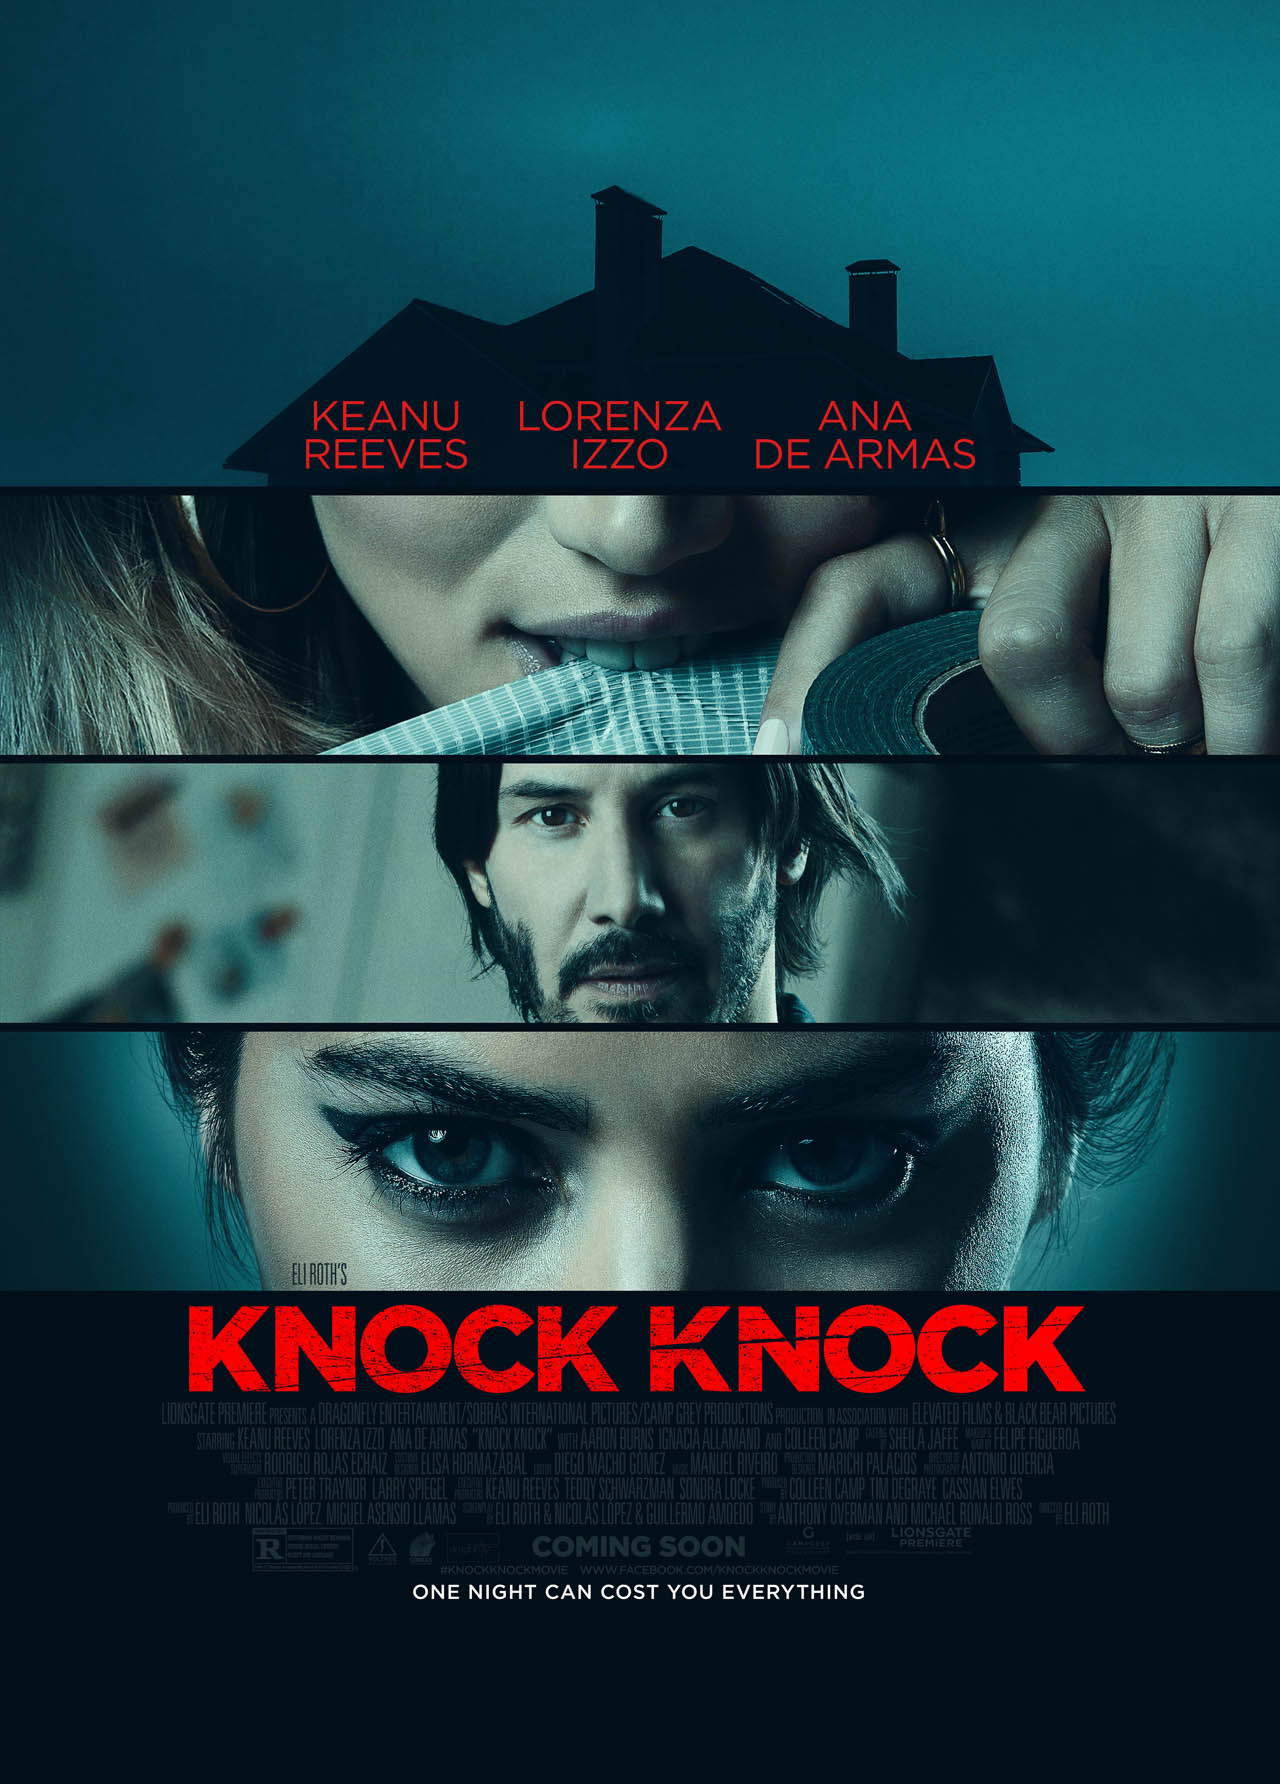 Nouveau trailer pour Knock Knock avec Keanu Reeves